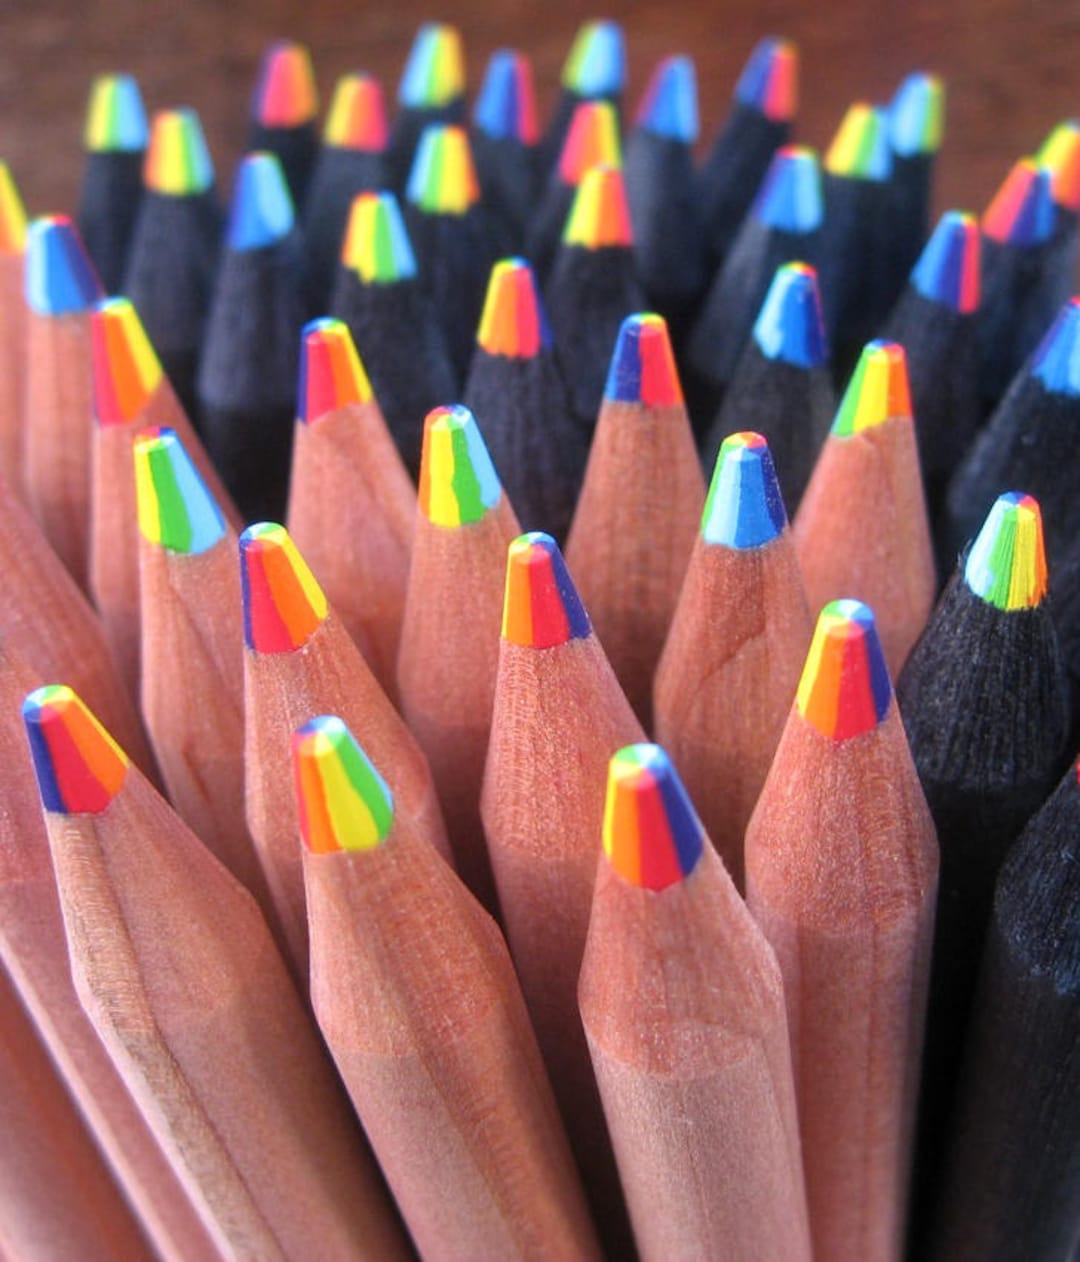 Snazaroo - Crayons de maquillage Snazaroo - Couleurs arc-en-ciel